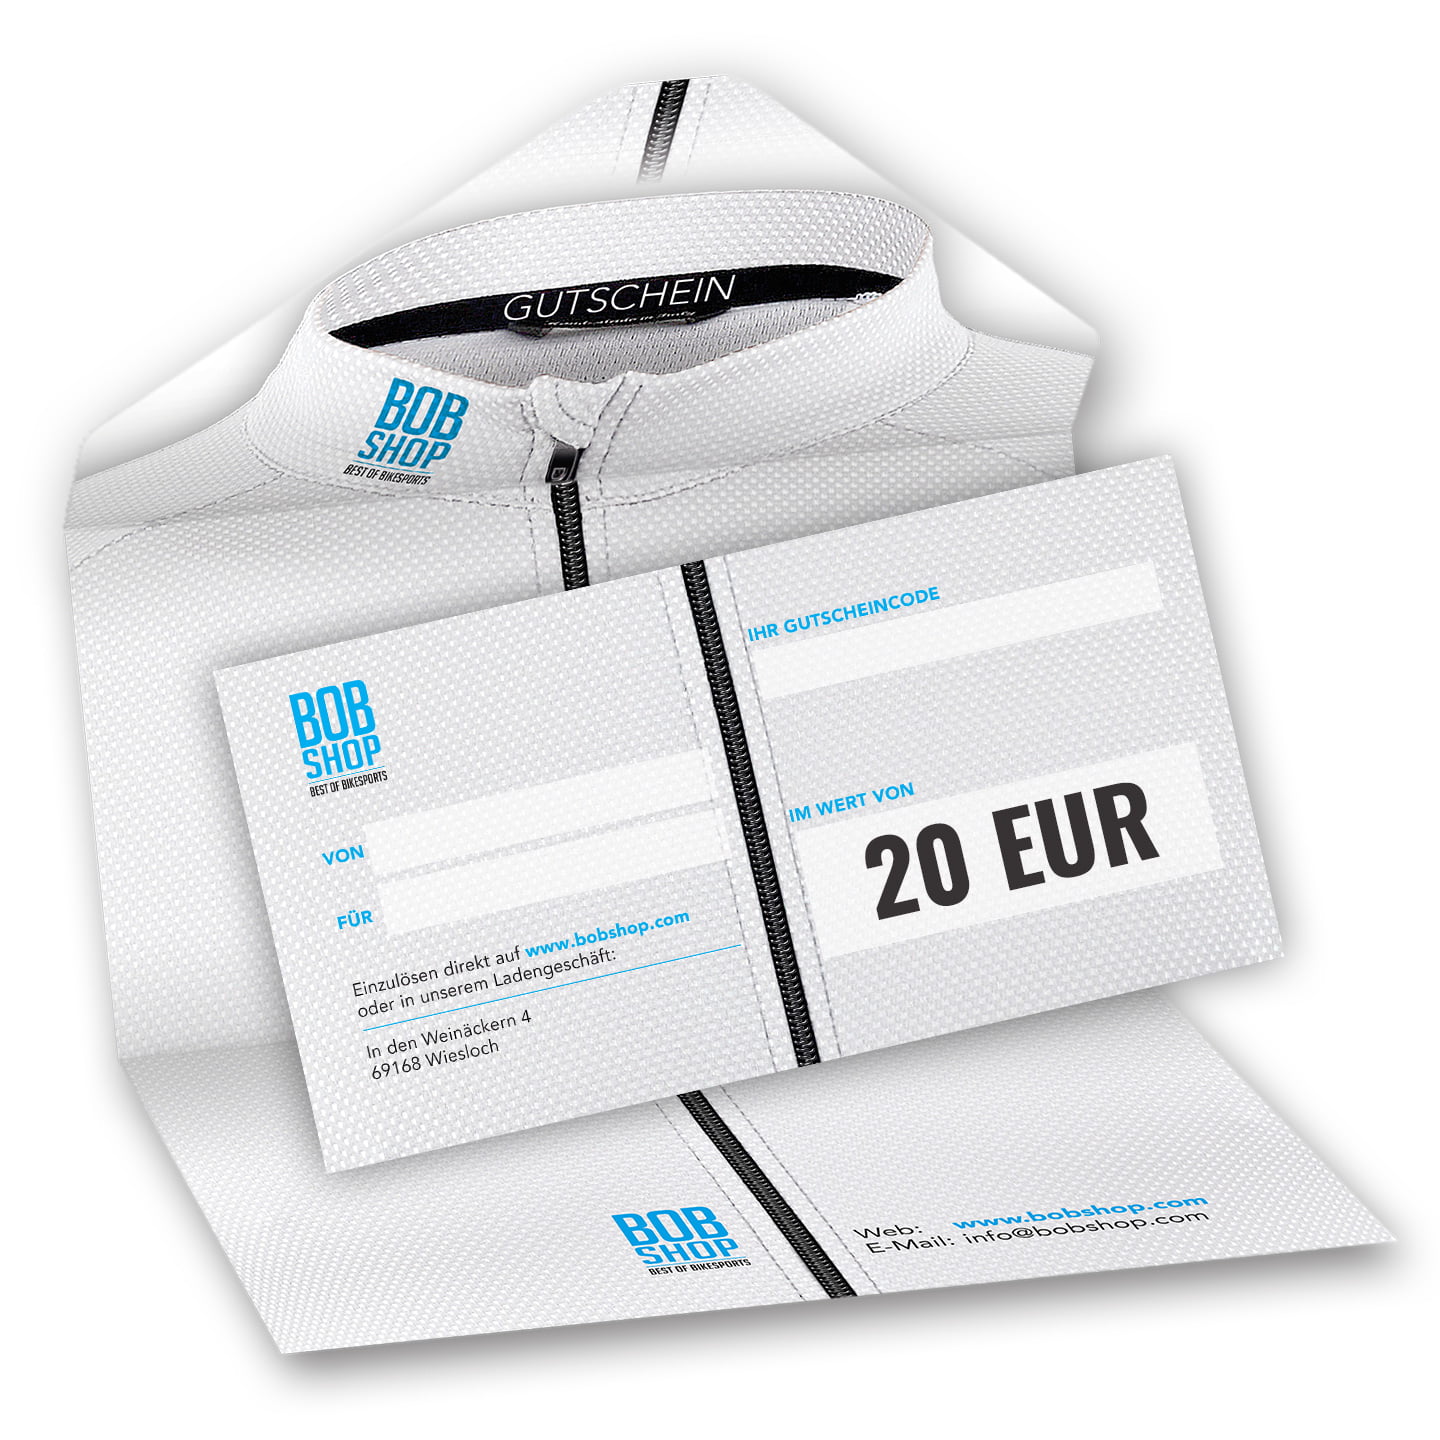 Bobshop gift voucher 20 EUR